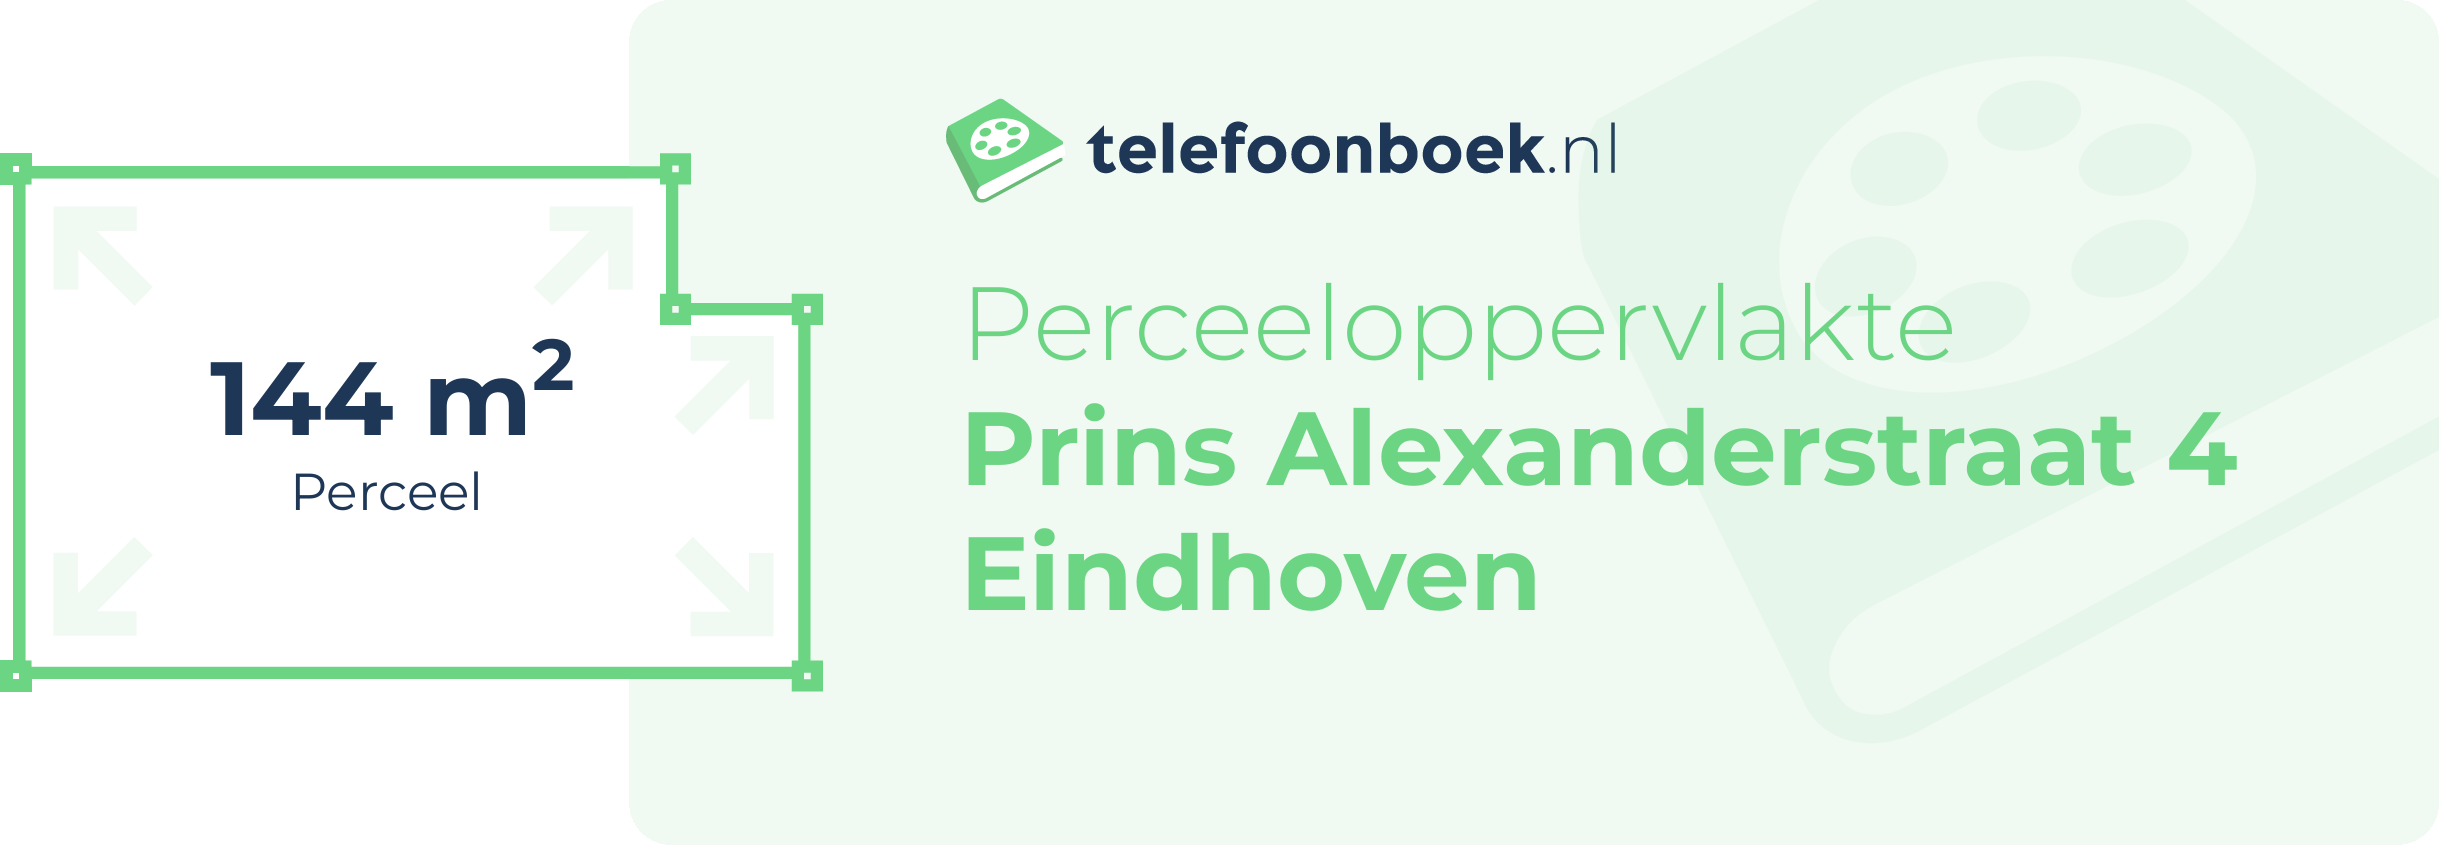 Perceeloppervlakte Prins Alexanderstraat 4 Eindhoven